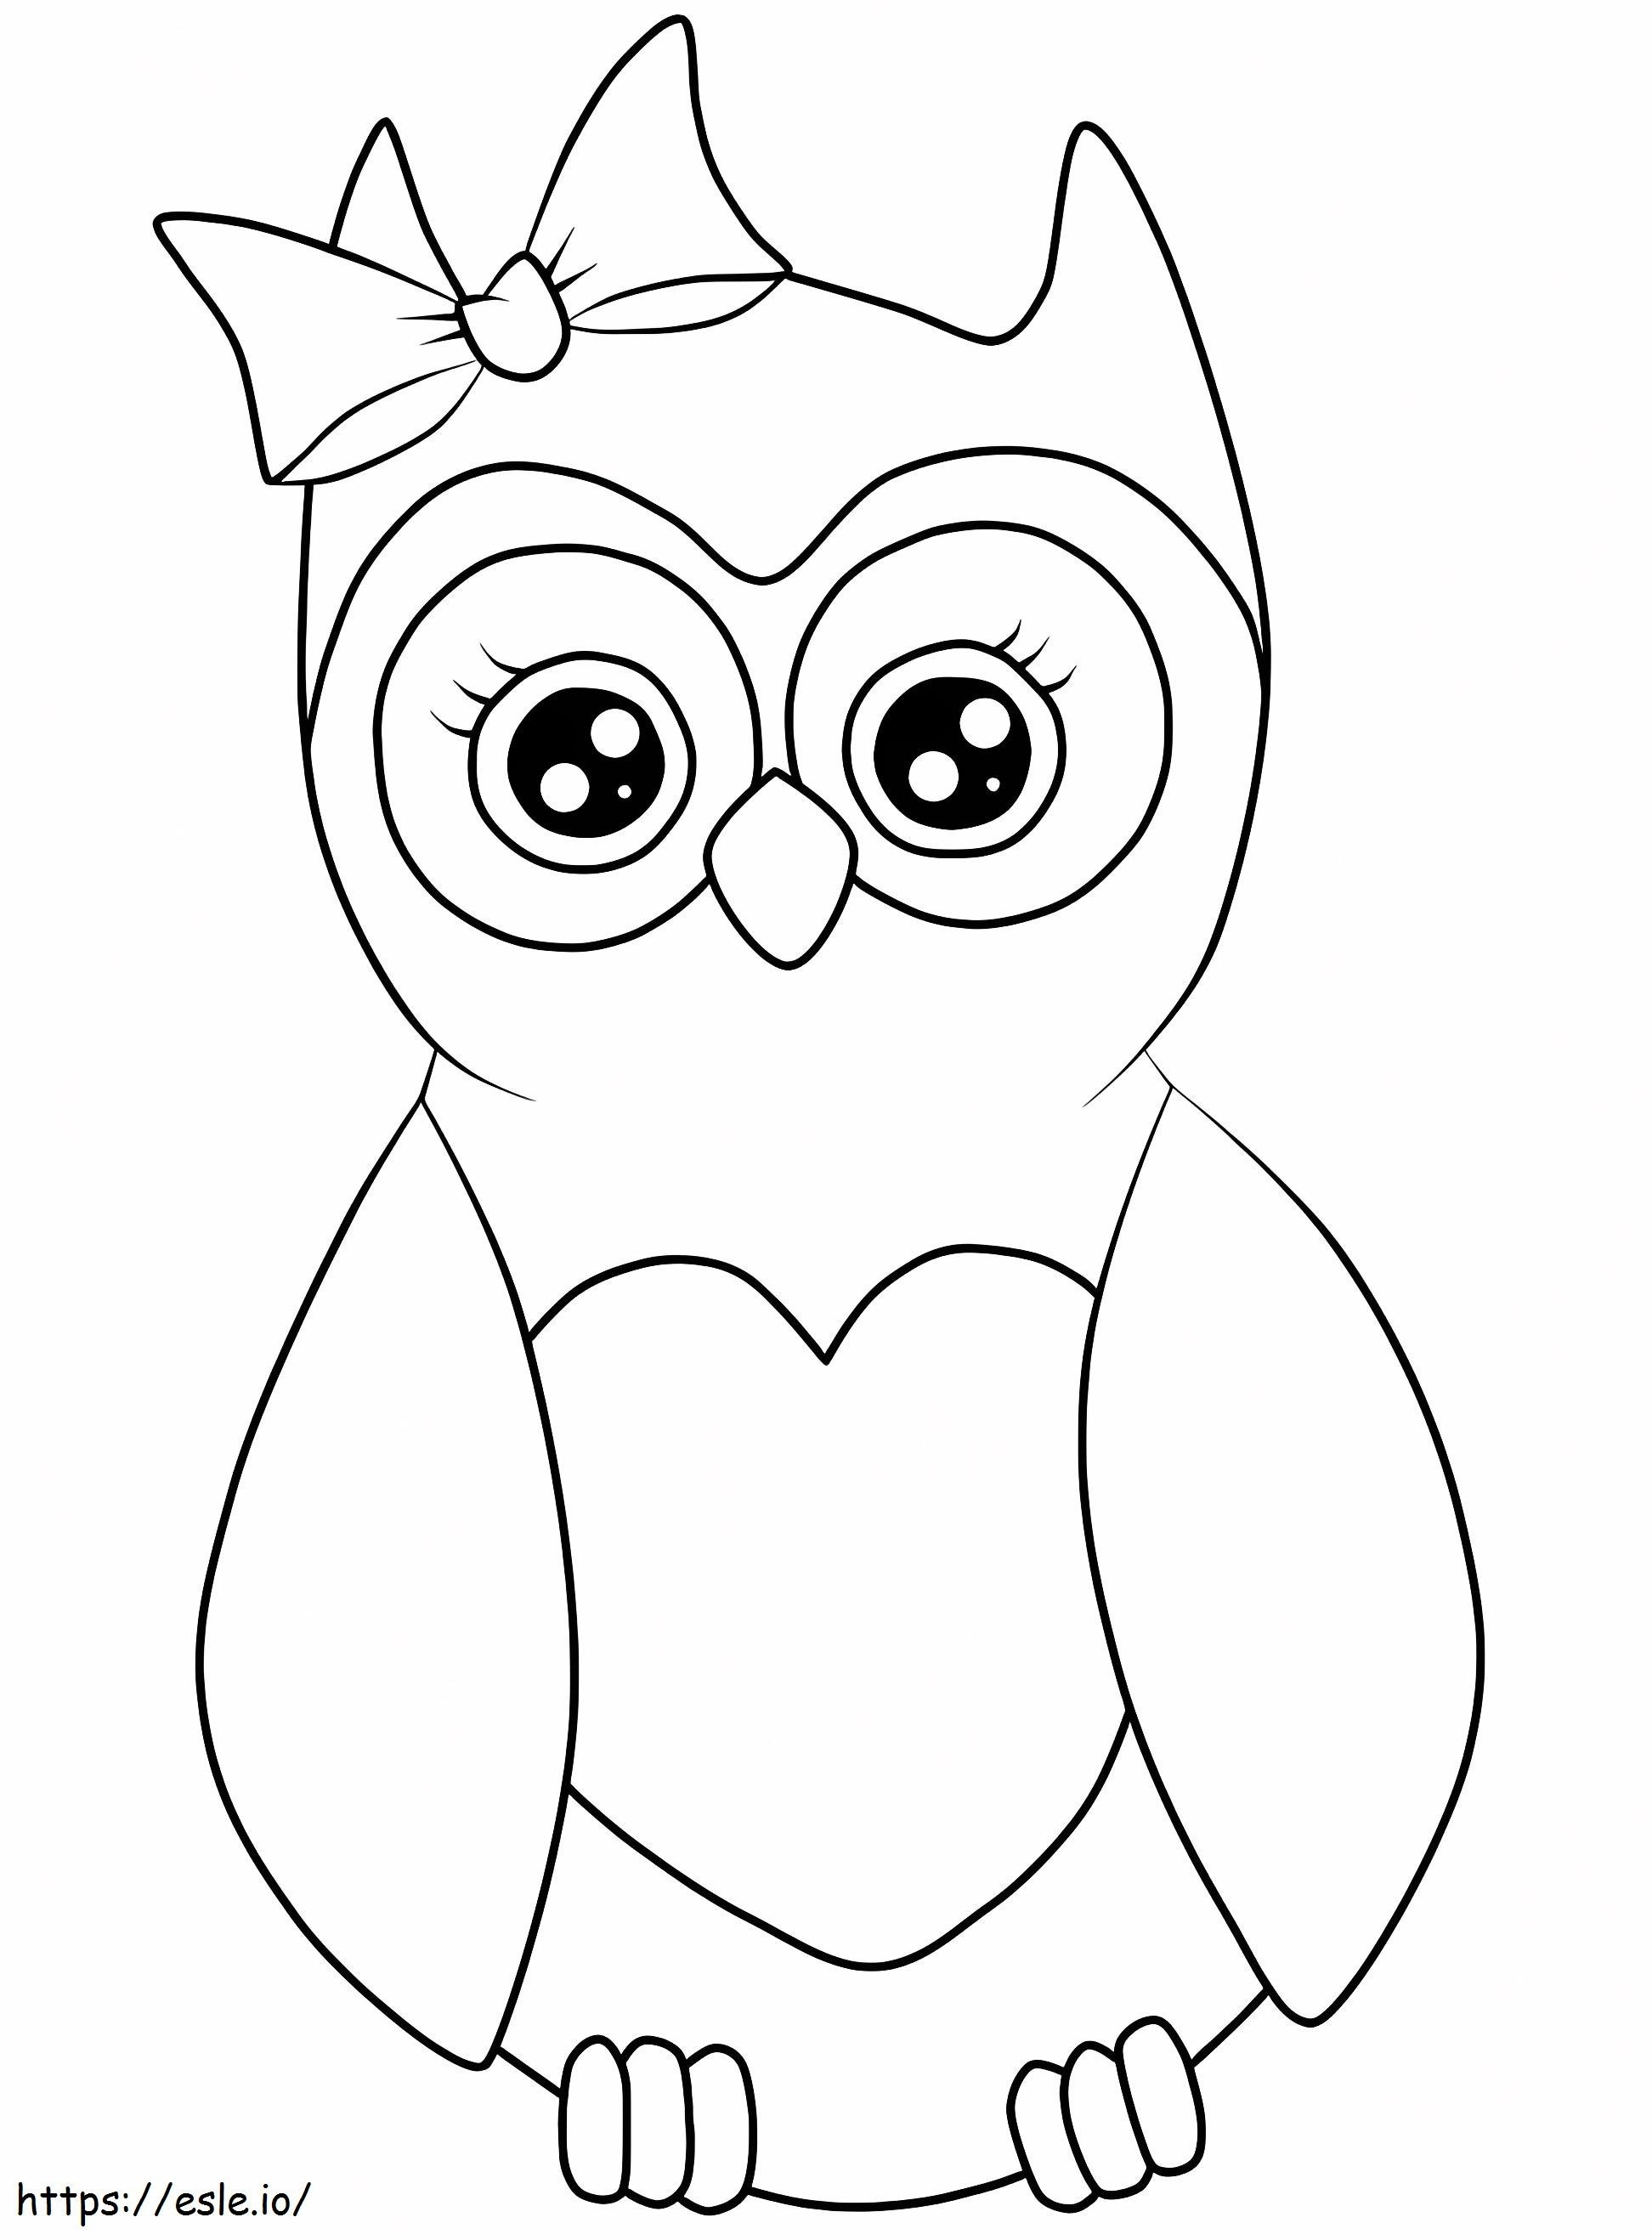 1560327670 Owl With Hair Bow A4 ...